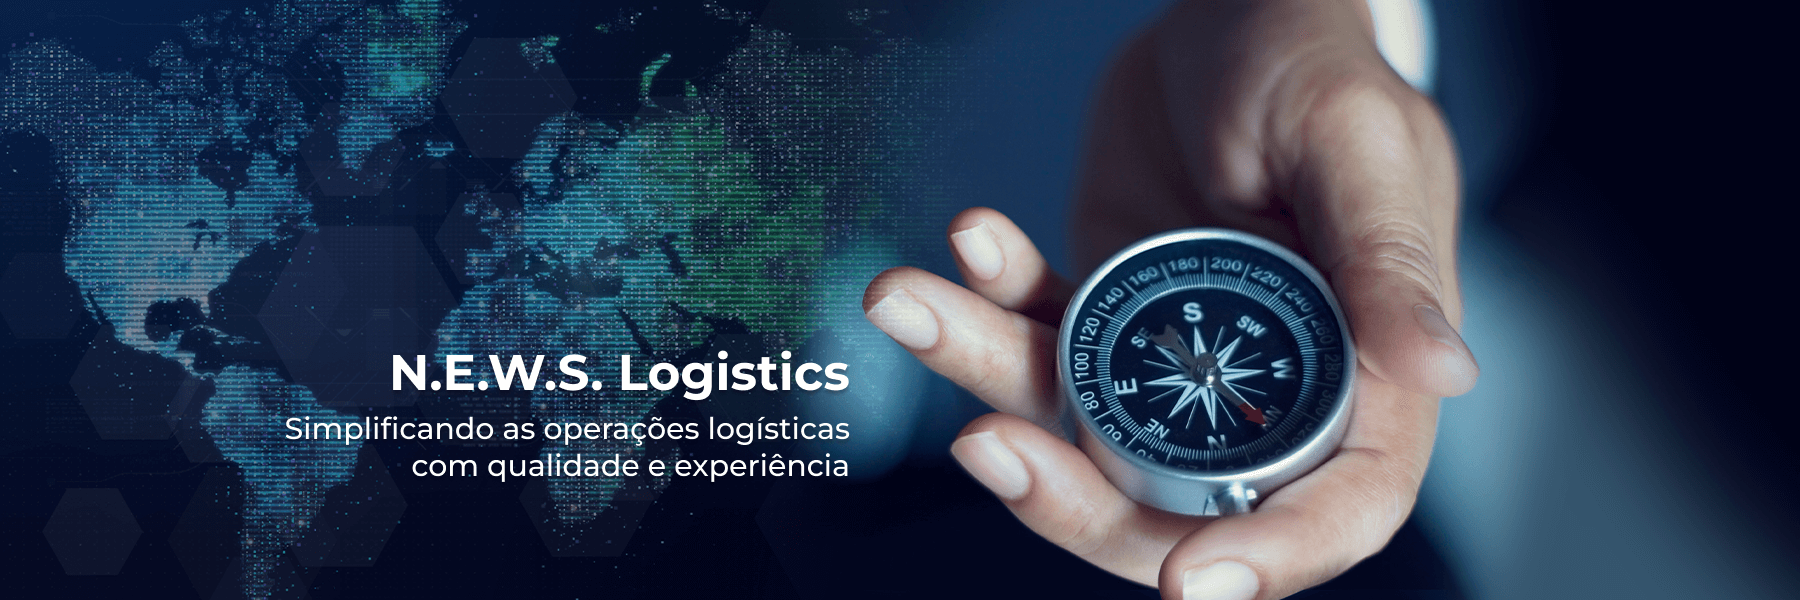 N.E.W.S. Logistics - Simplificando as operações logísticas com a qualidade e experiência.